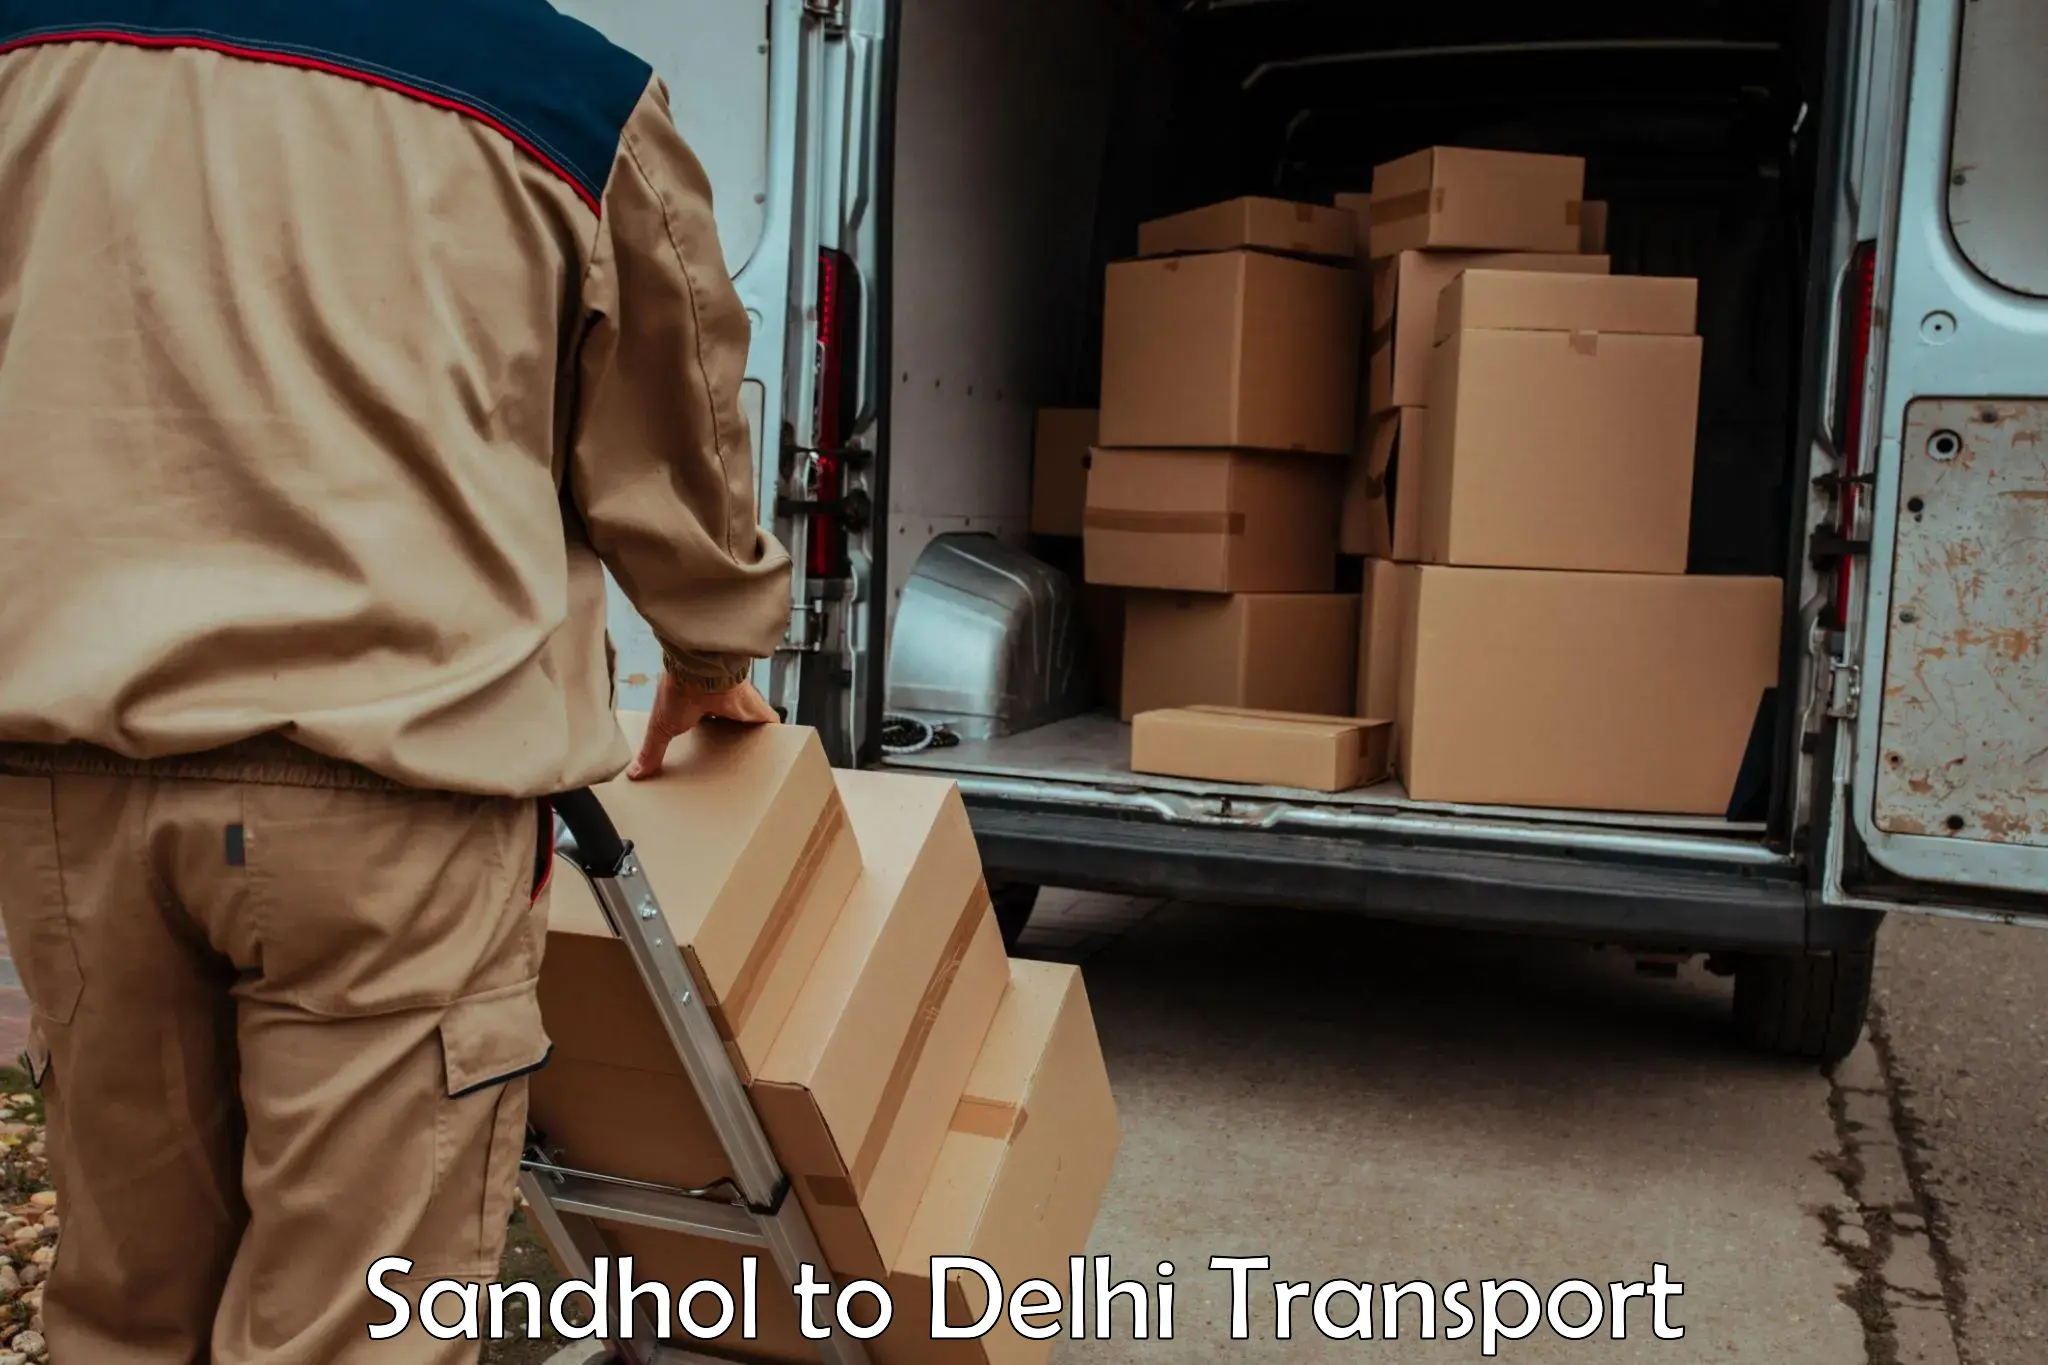 Pick up transport service Sandhol to NIT Delhi